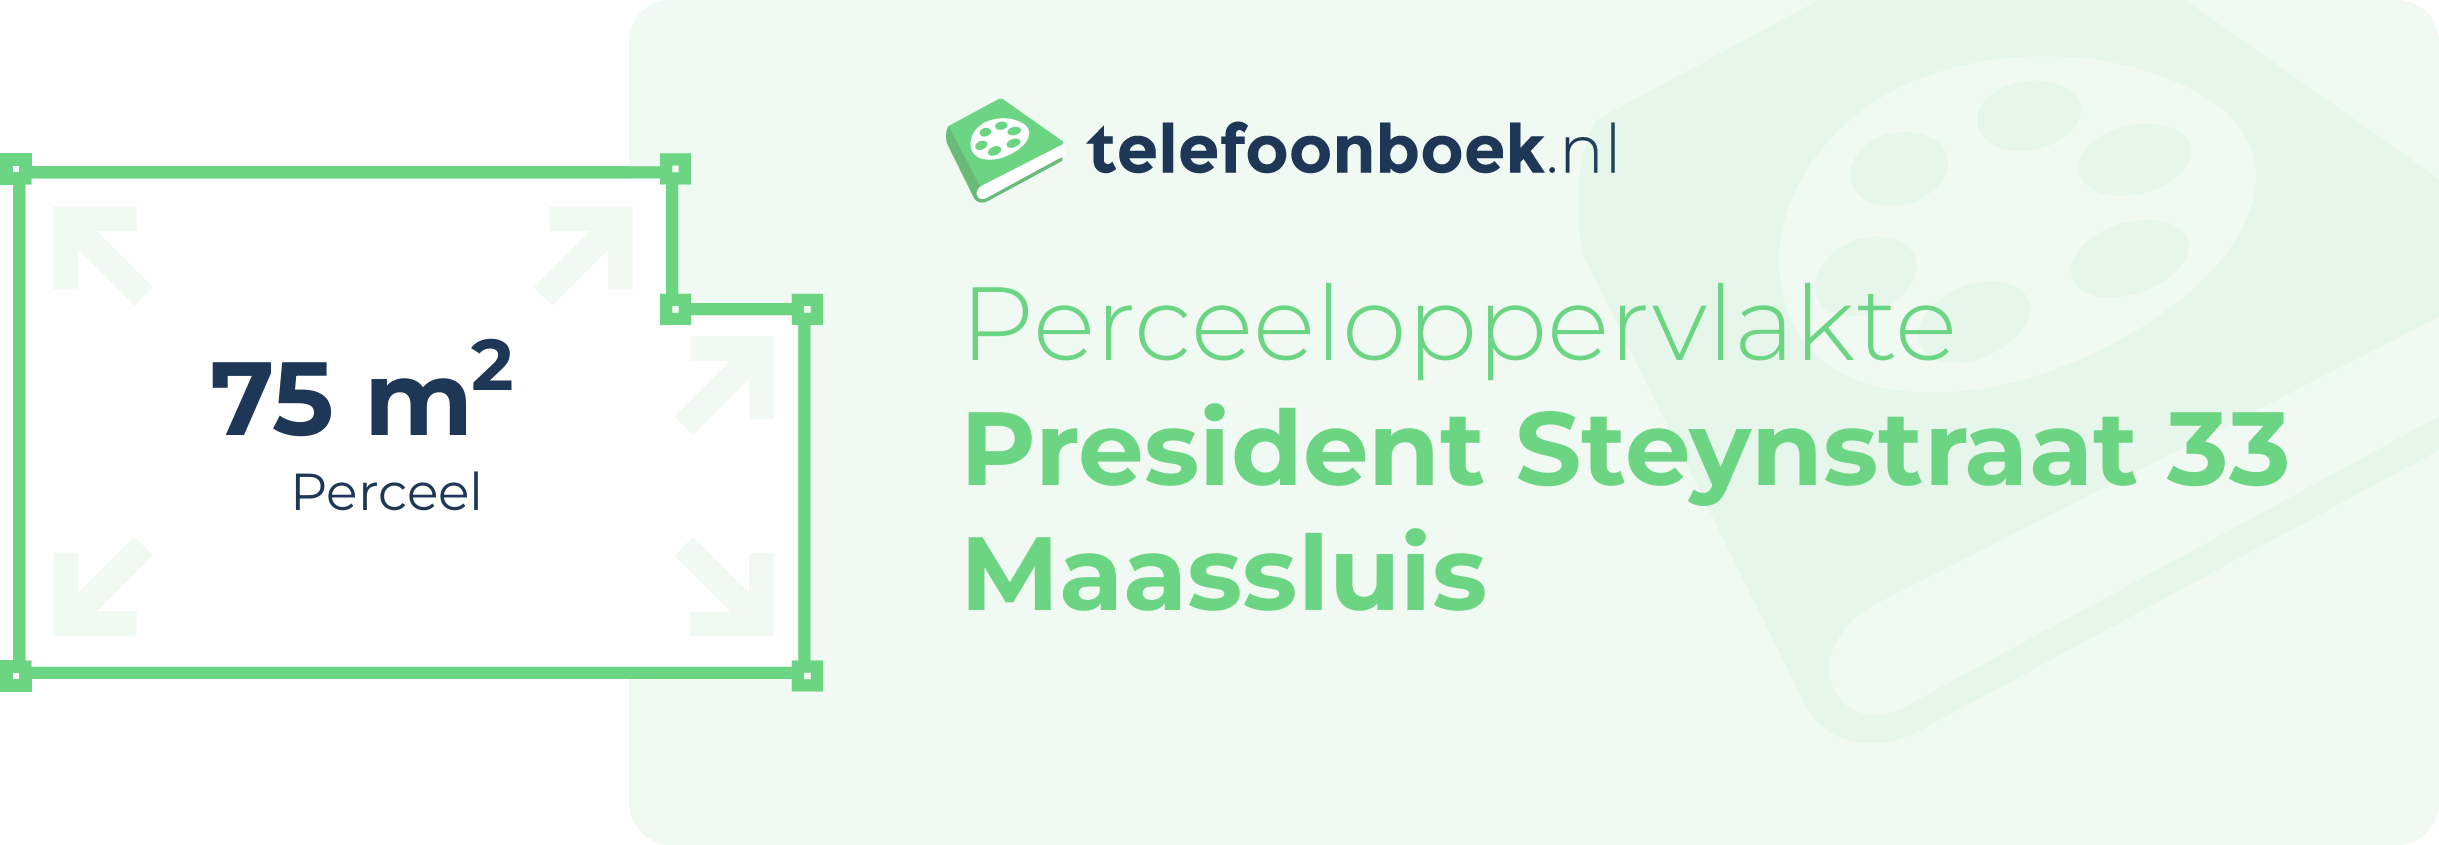 Perceeloppervlakte President Steynstraat 33 Maassluis